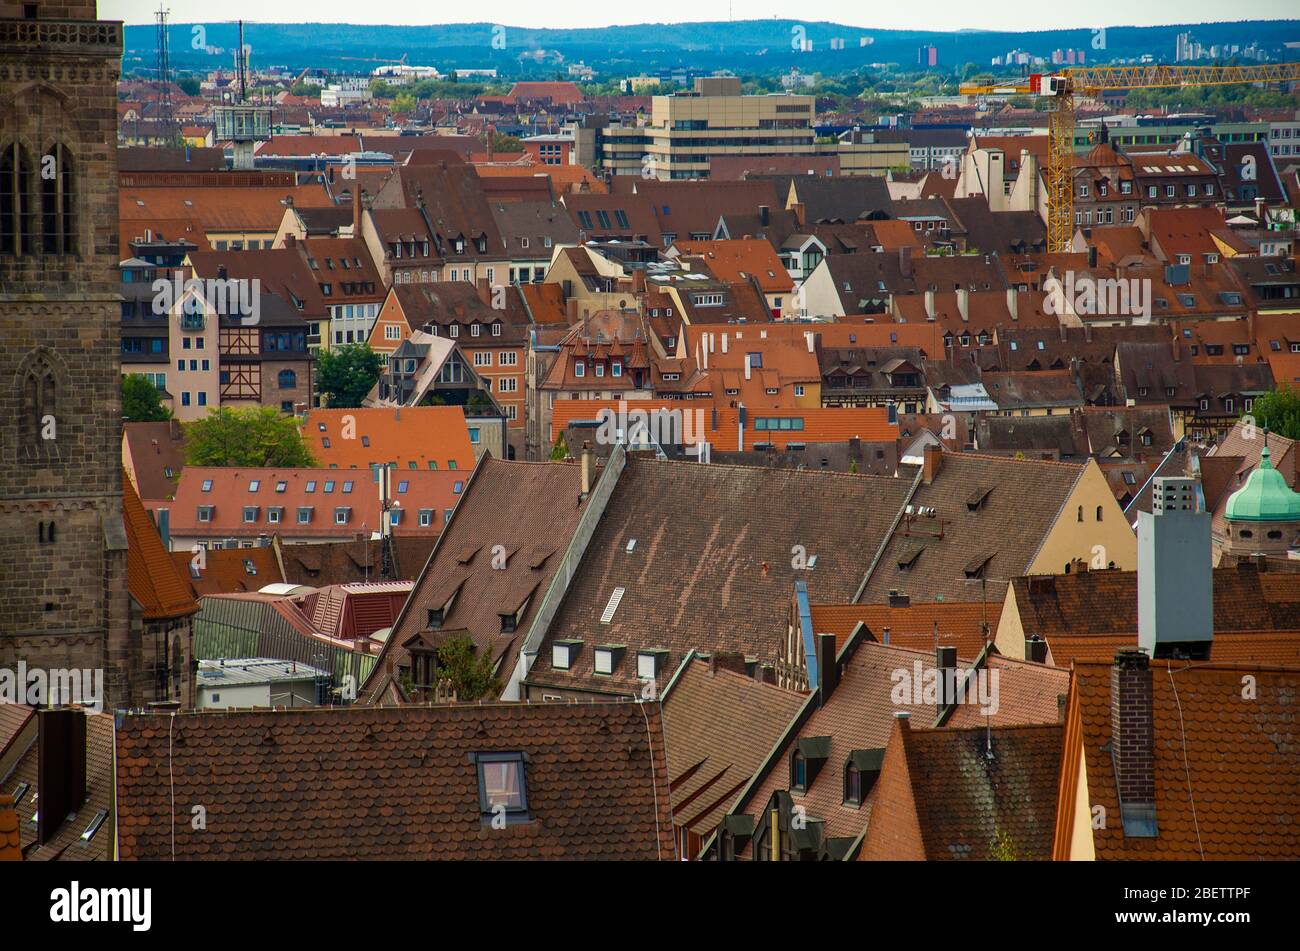 Vue sur les toits d'orange de la vieille ville historique de Nuremberg Nurnberg, région de Mittelfranken, Bavière, Allemagne Banque D'Images